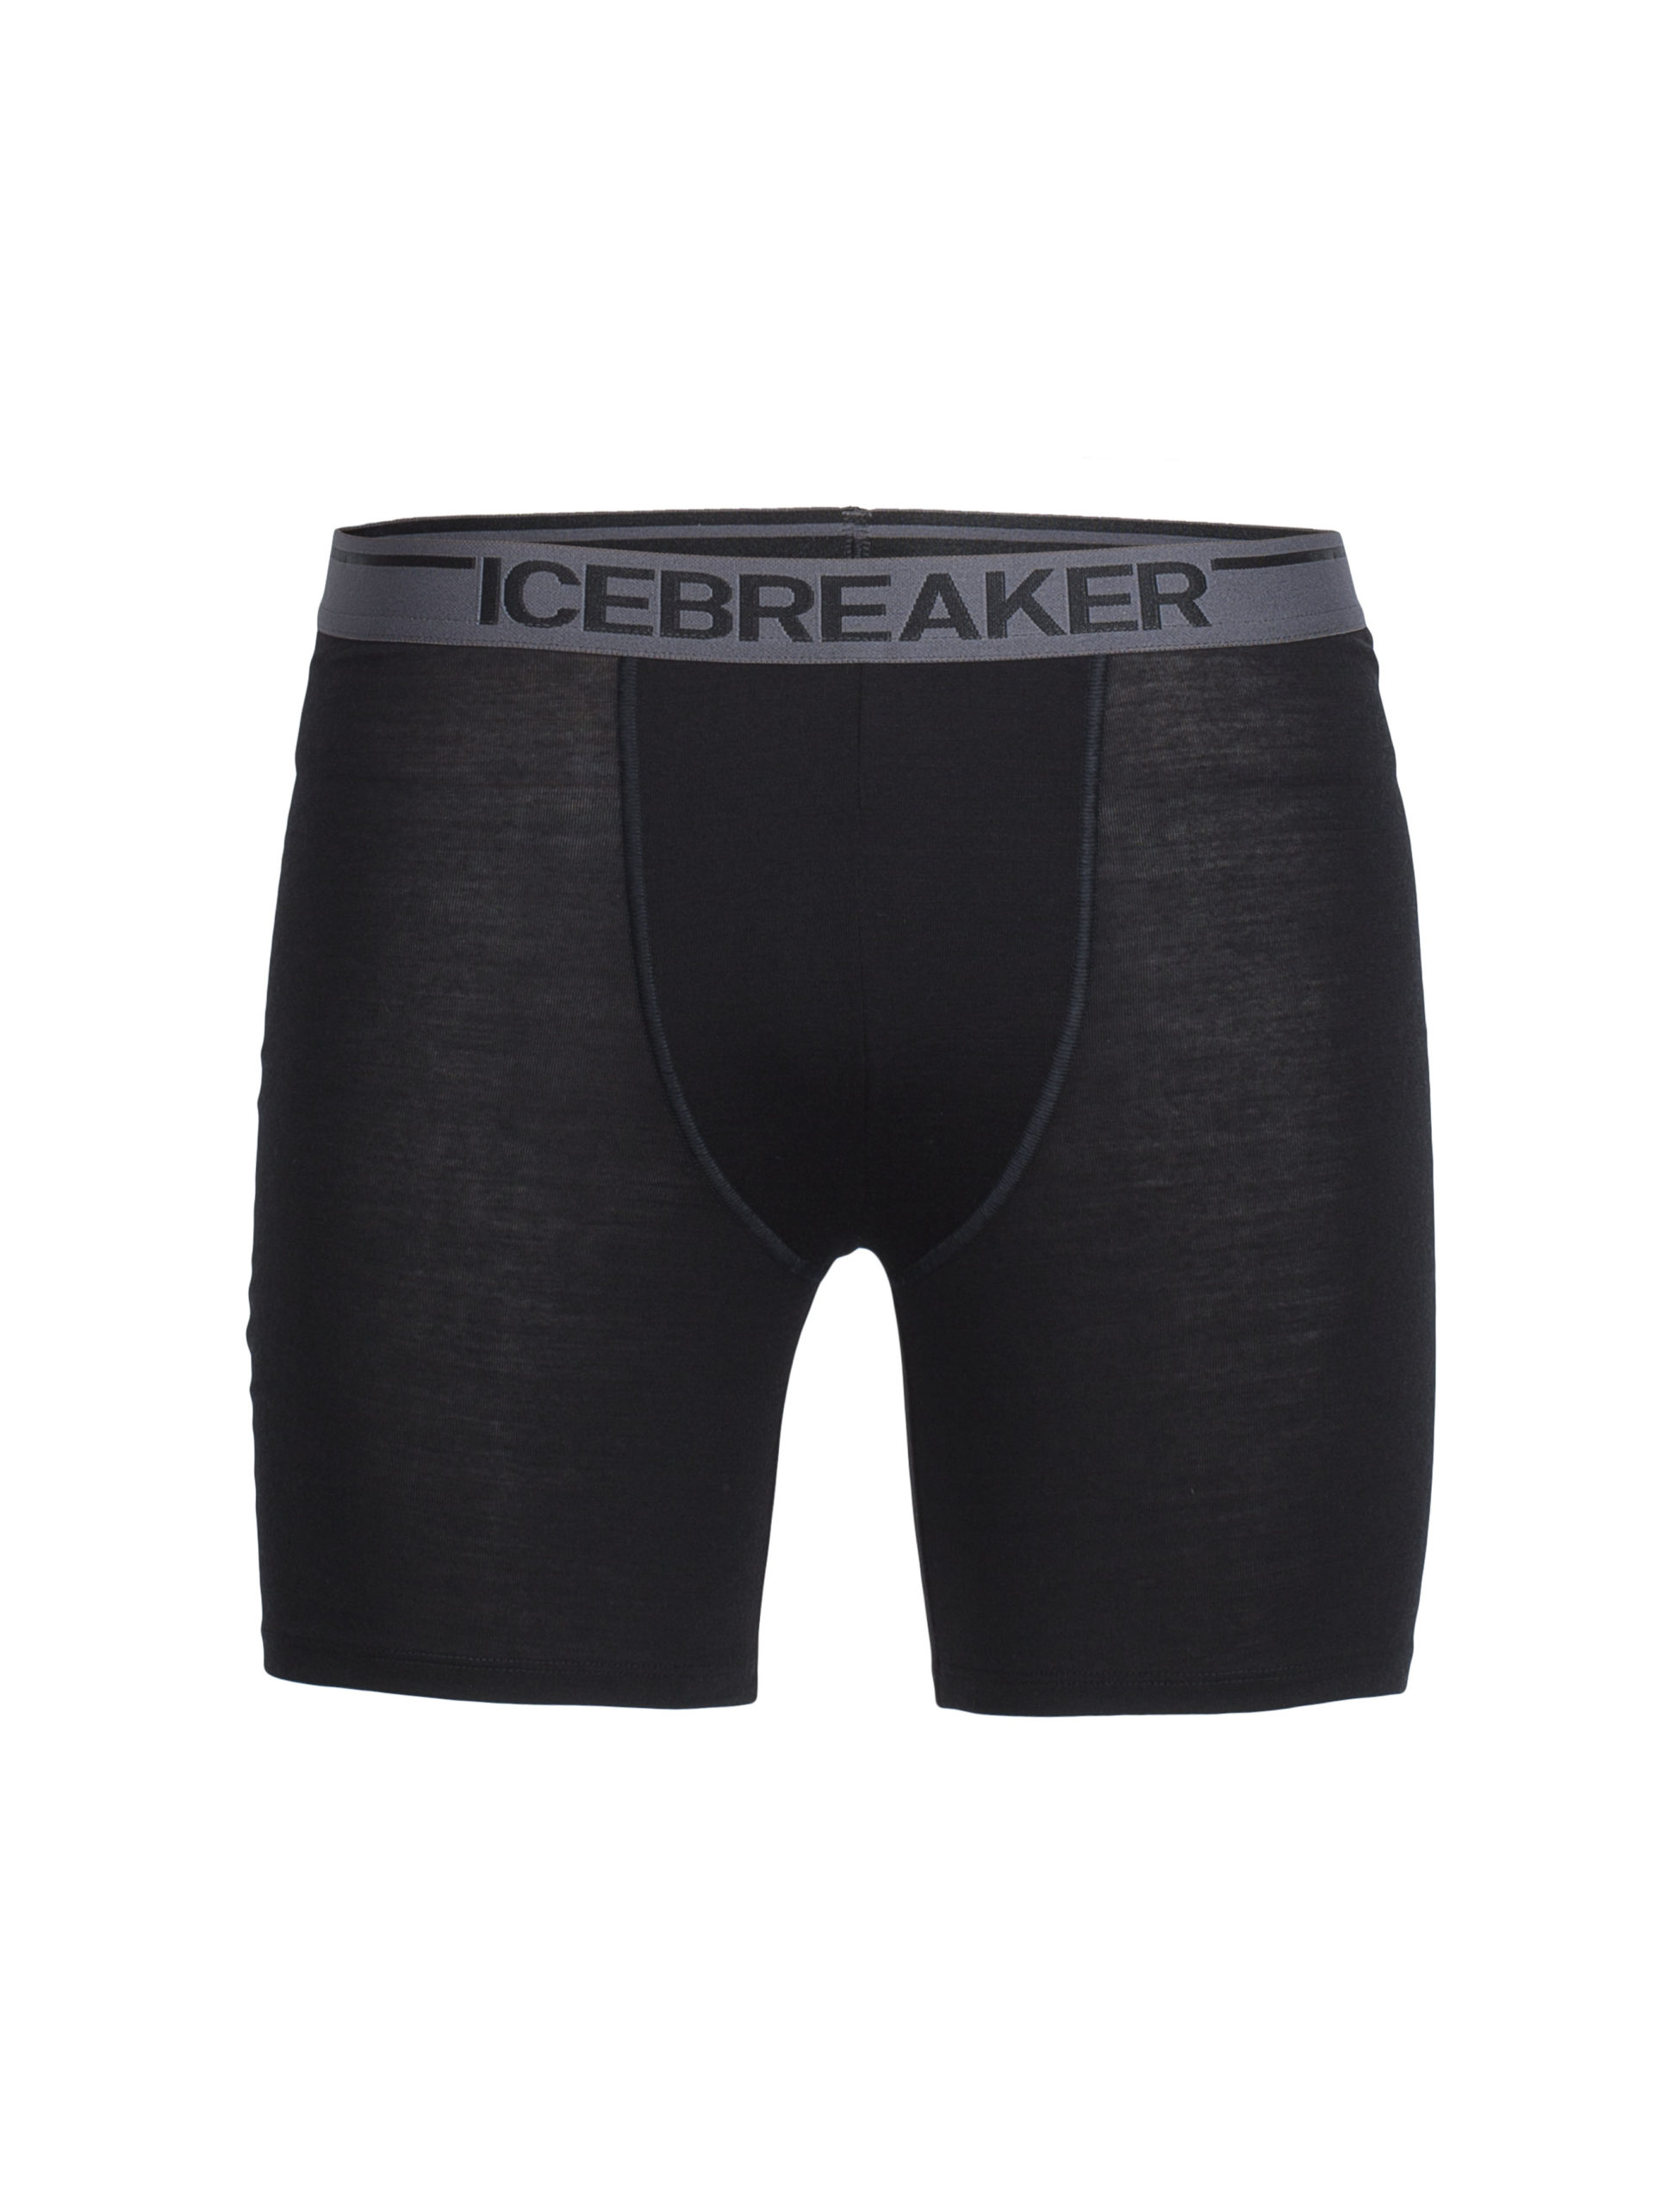 Icebreaker Mens Anatomica Long Boxers-0